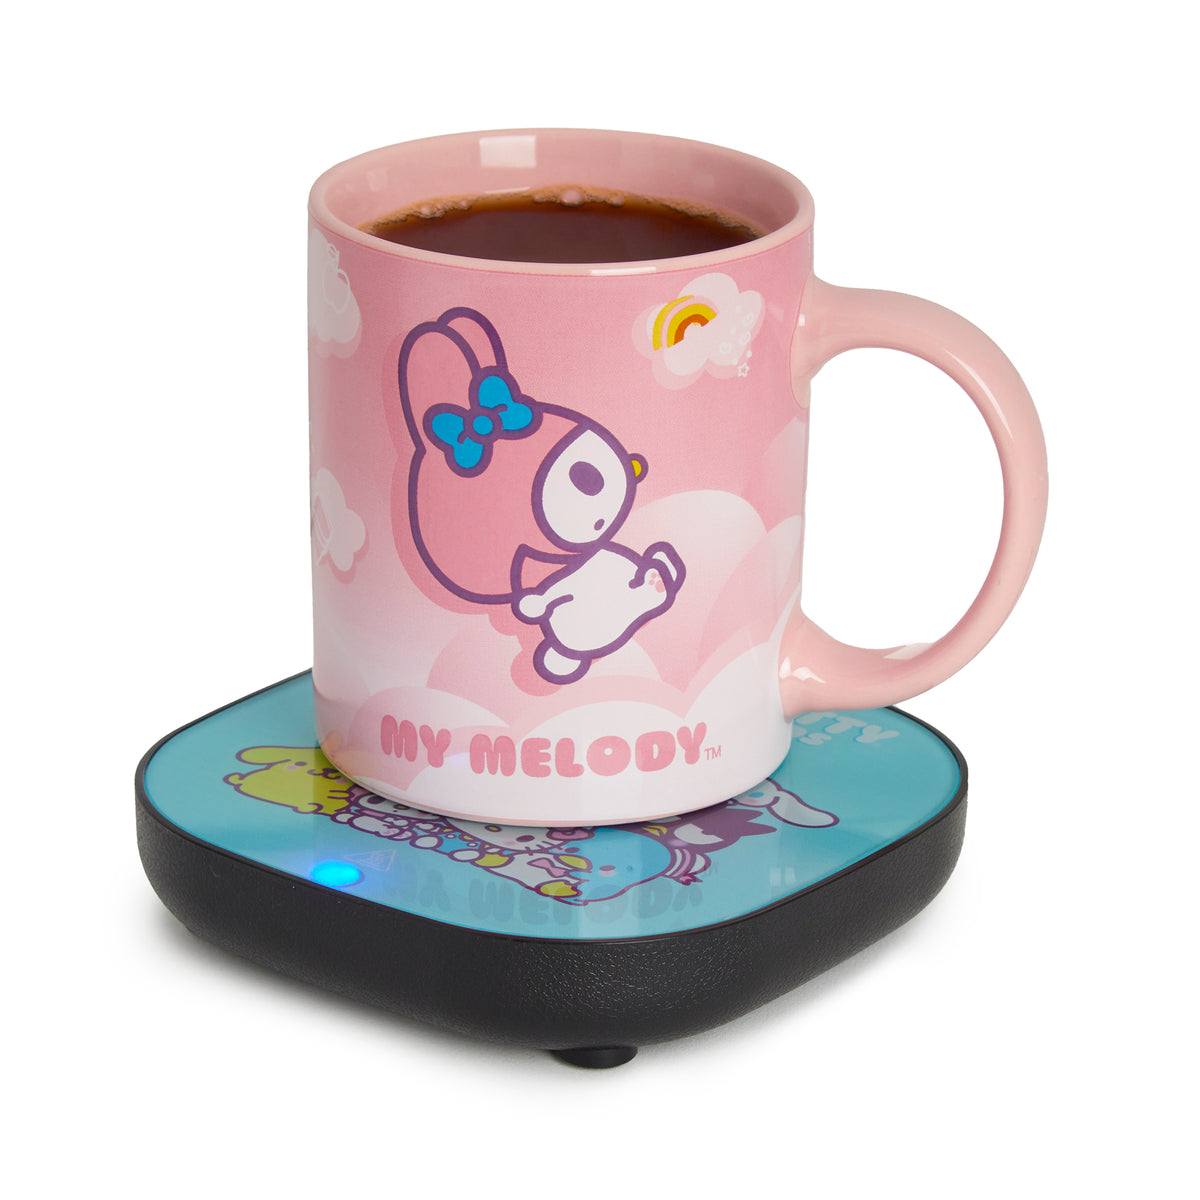 My Melody Coffee Mug Warmer Set